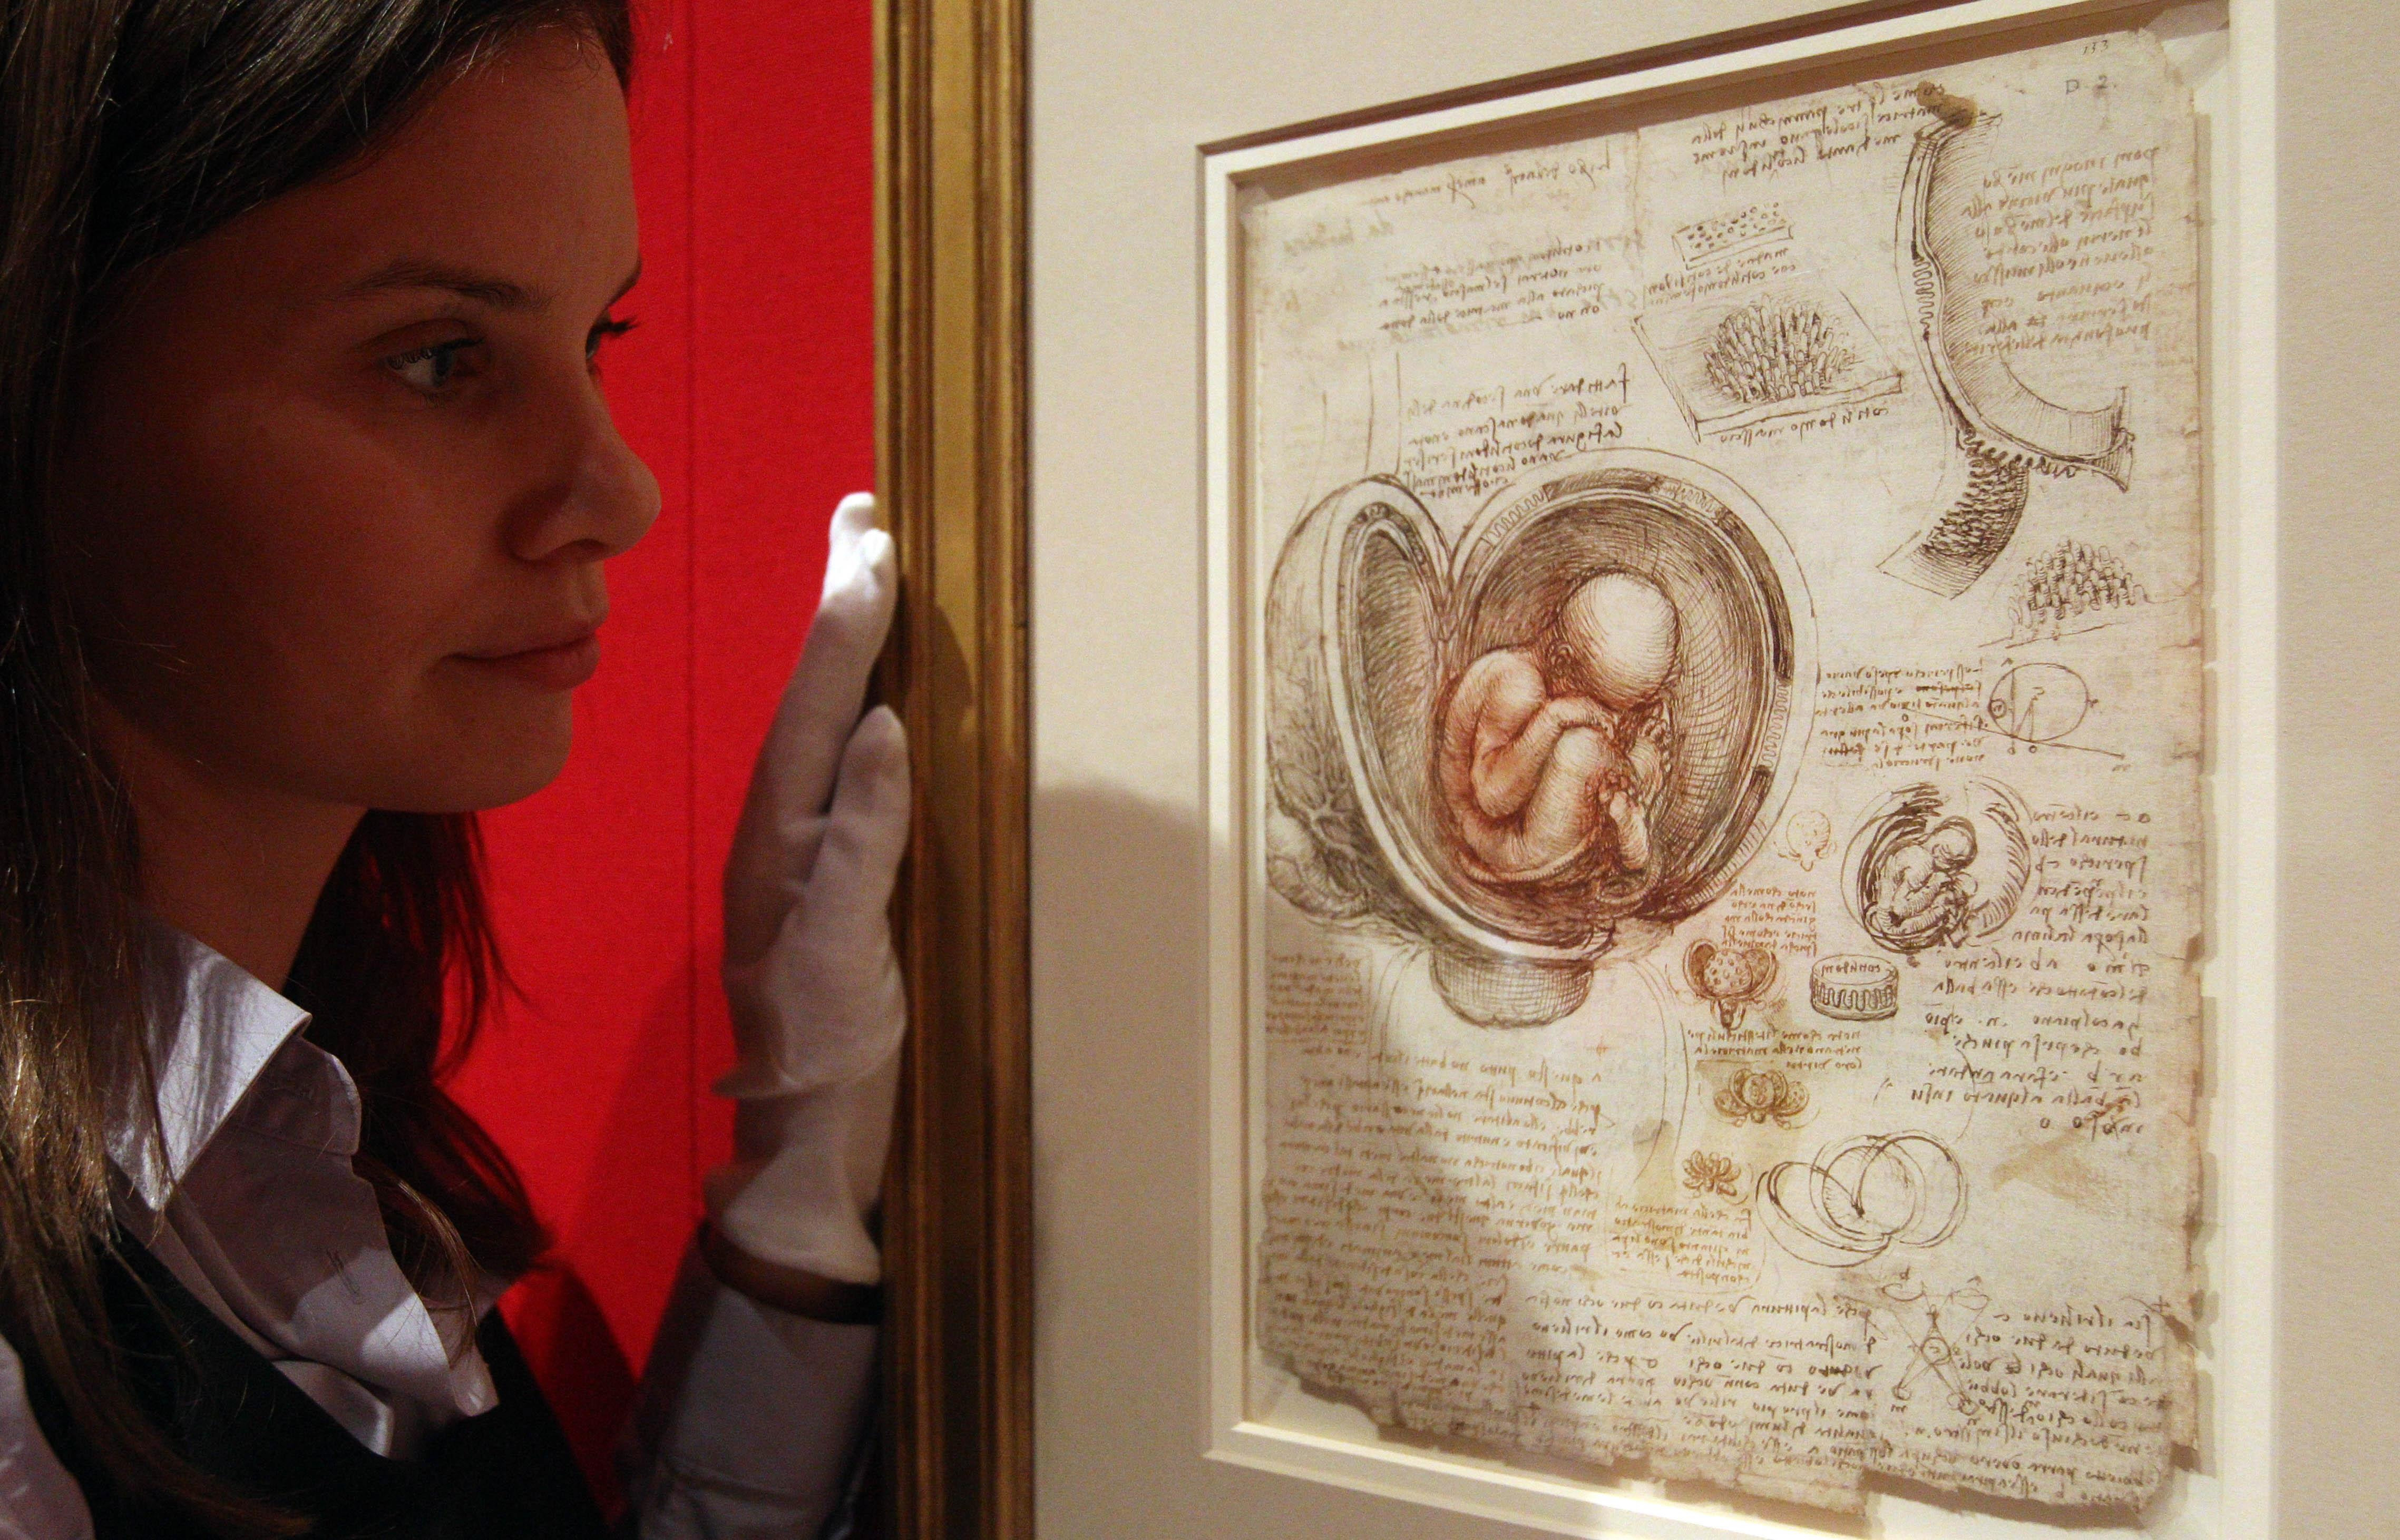 Leonardo - study of a fetus